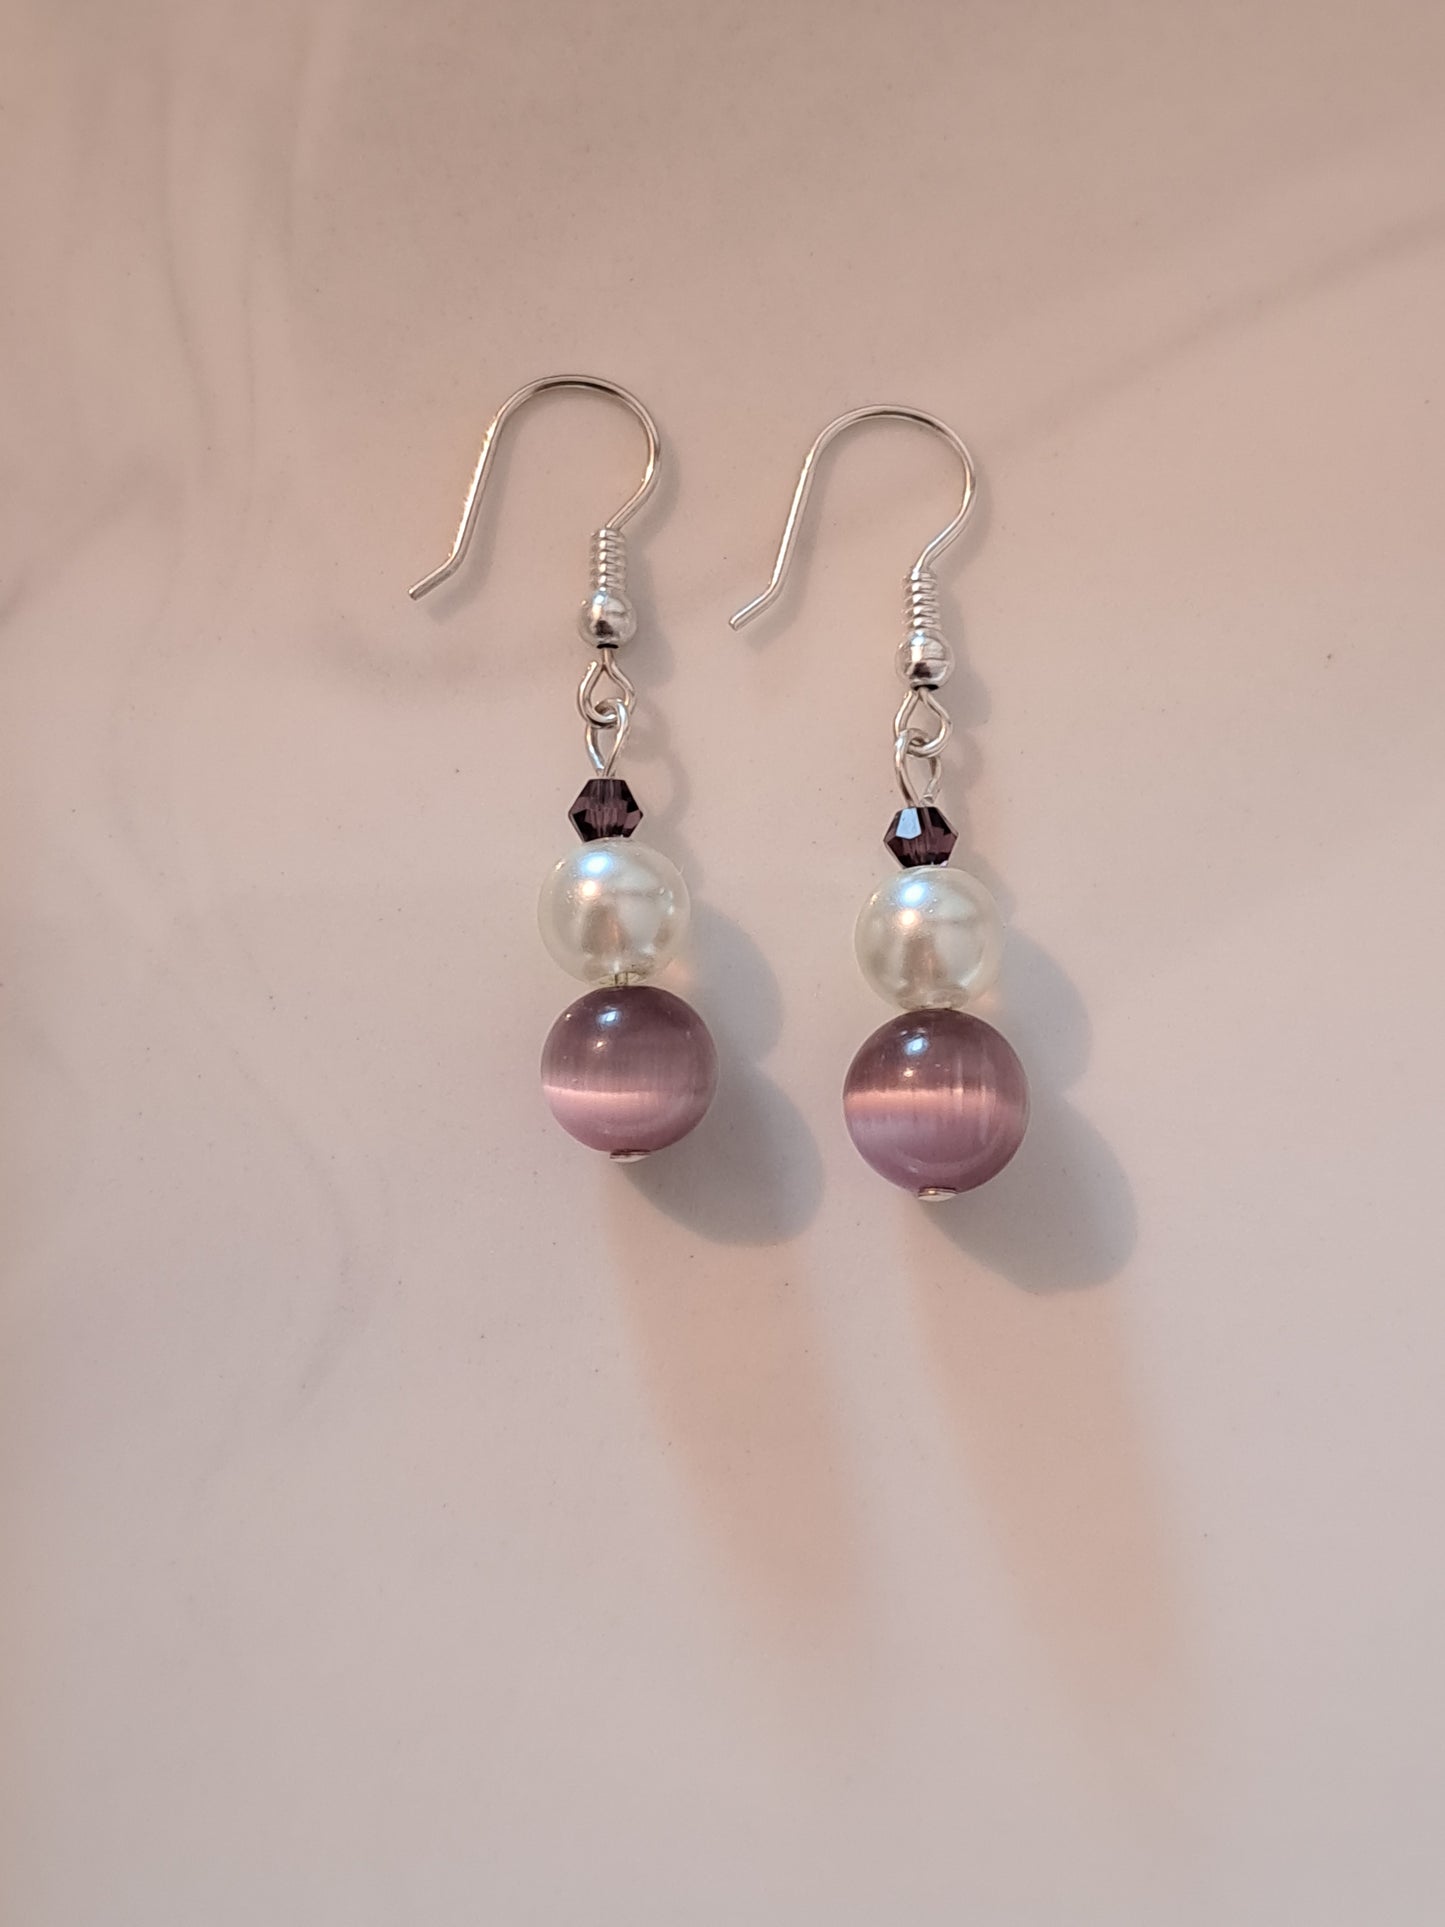 Boucles d'oreilles en argent avec perles blanches et violettes. Site de bijoux en ligne France